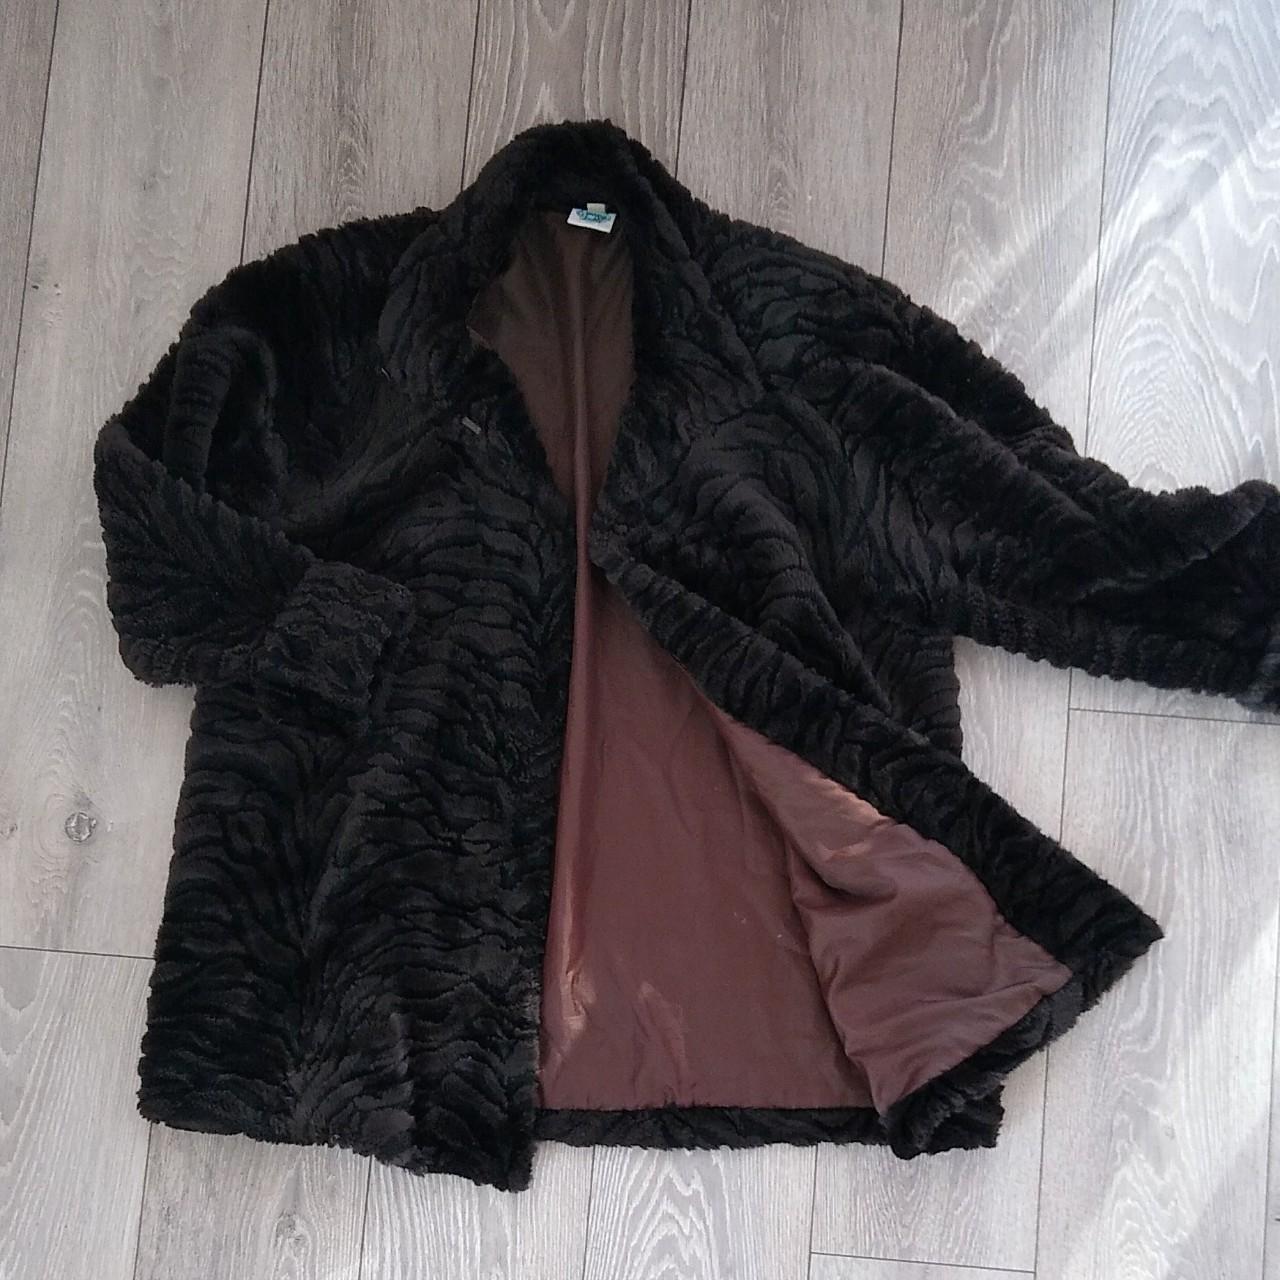 Ladies Faux Fur Swing Coat By Topshop Vintage 90s... - Depop